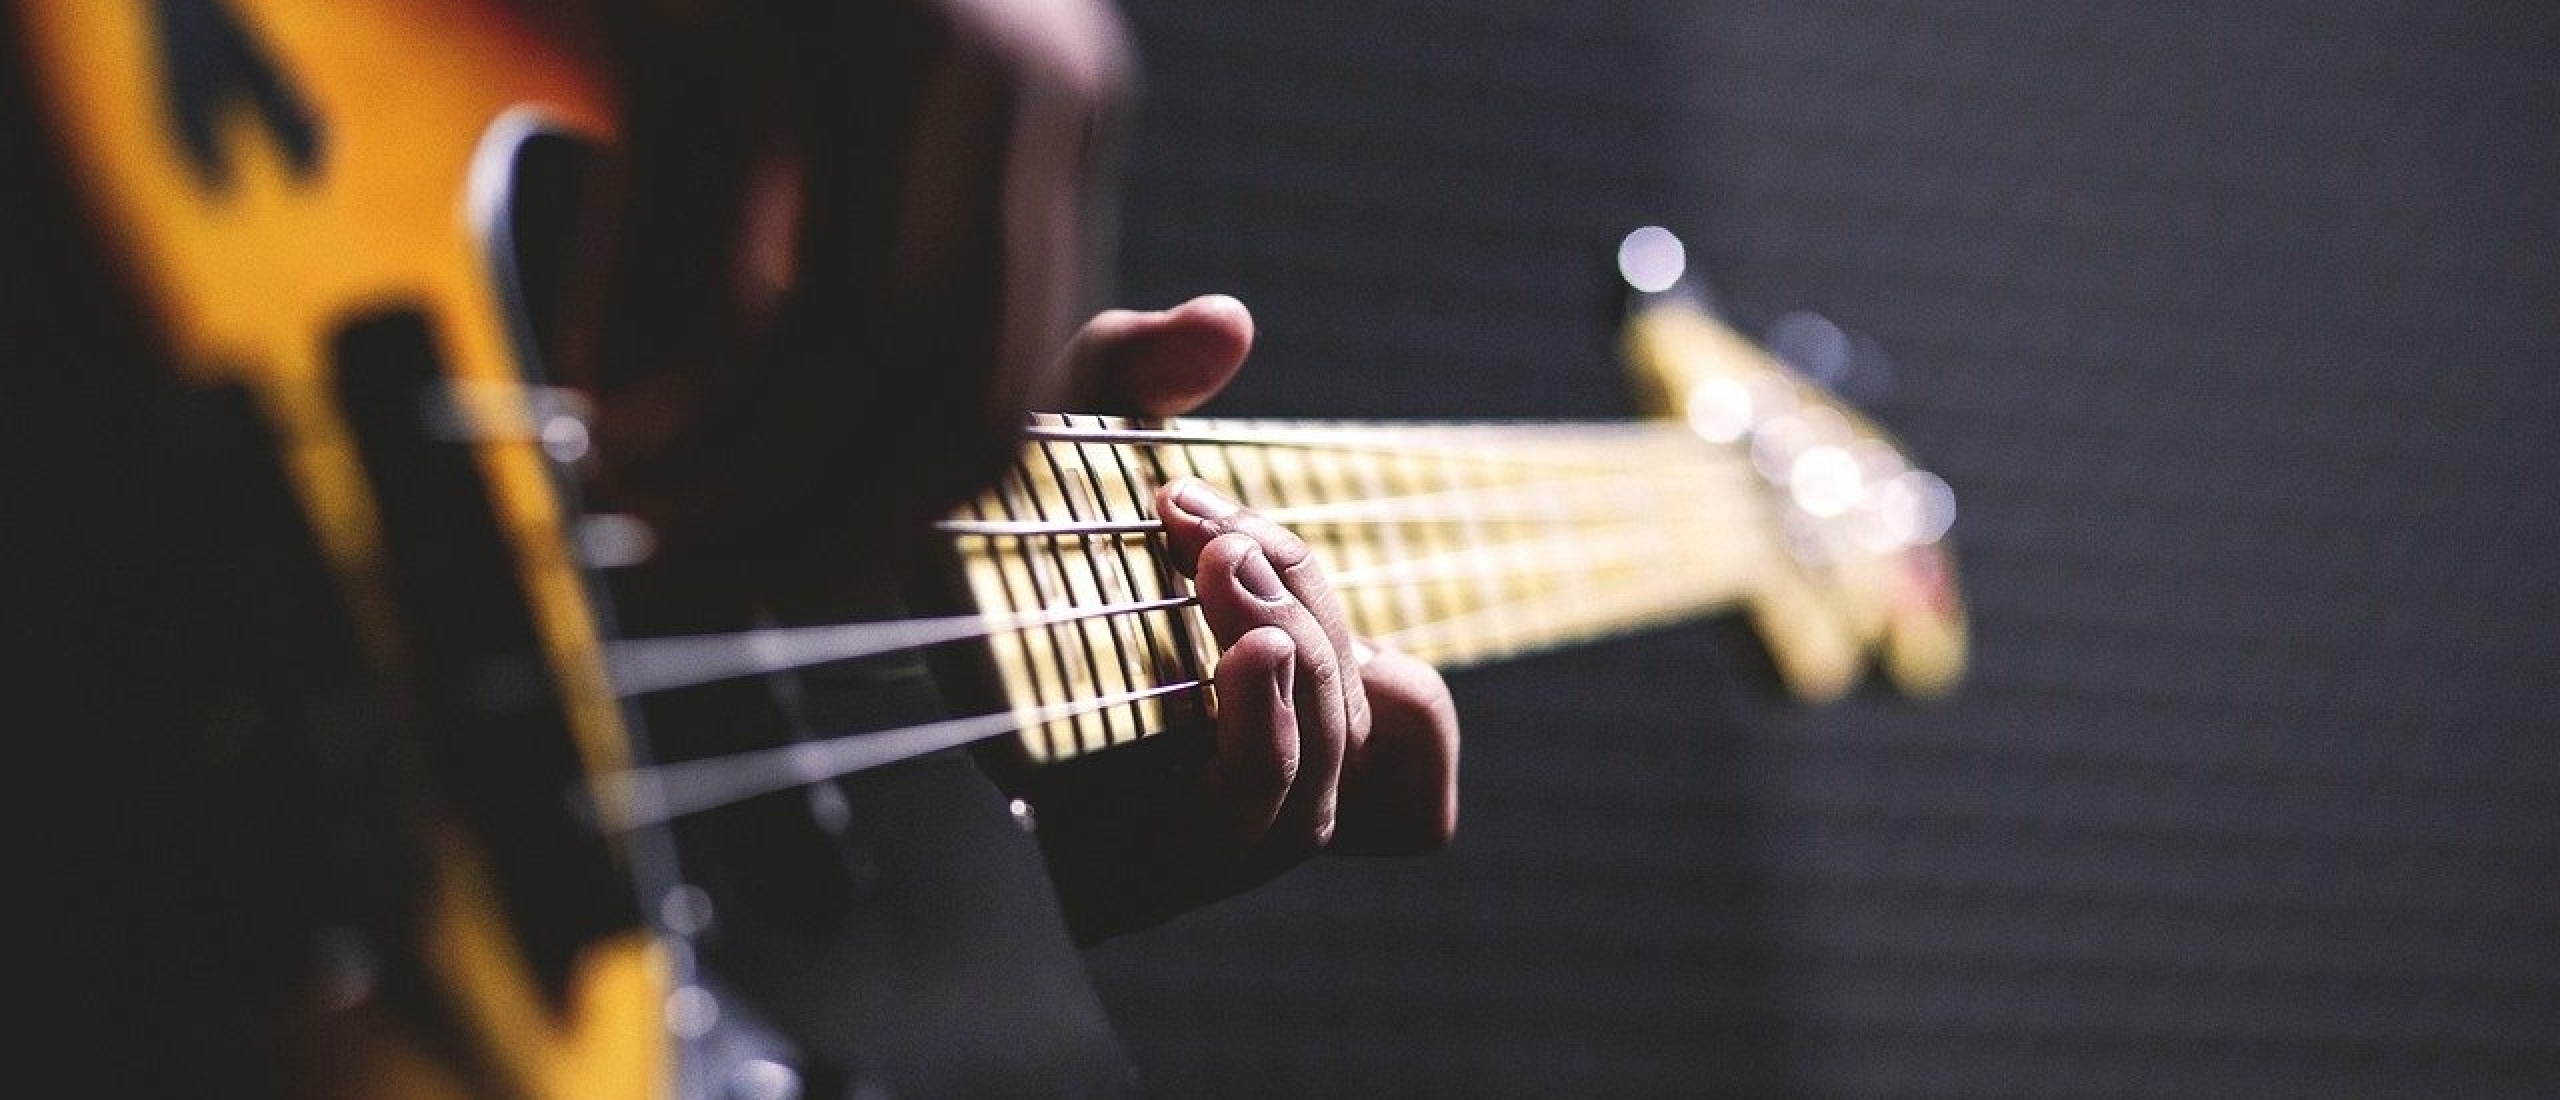 Houtsoort van gitaar toets van de basgitaar: een belangrijke factor?